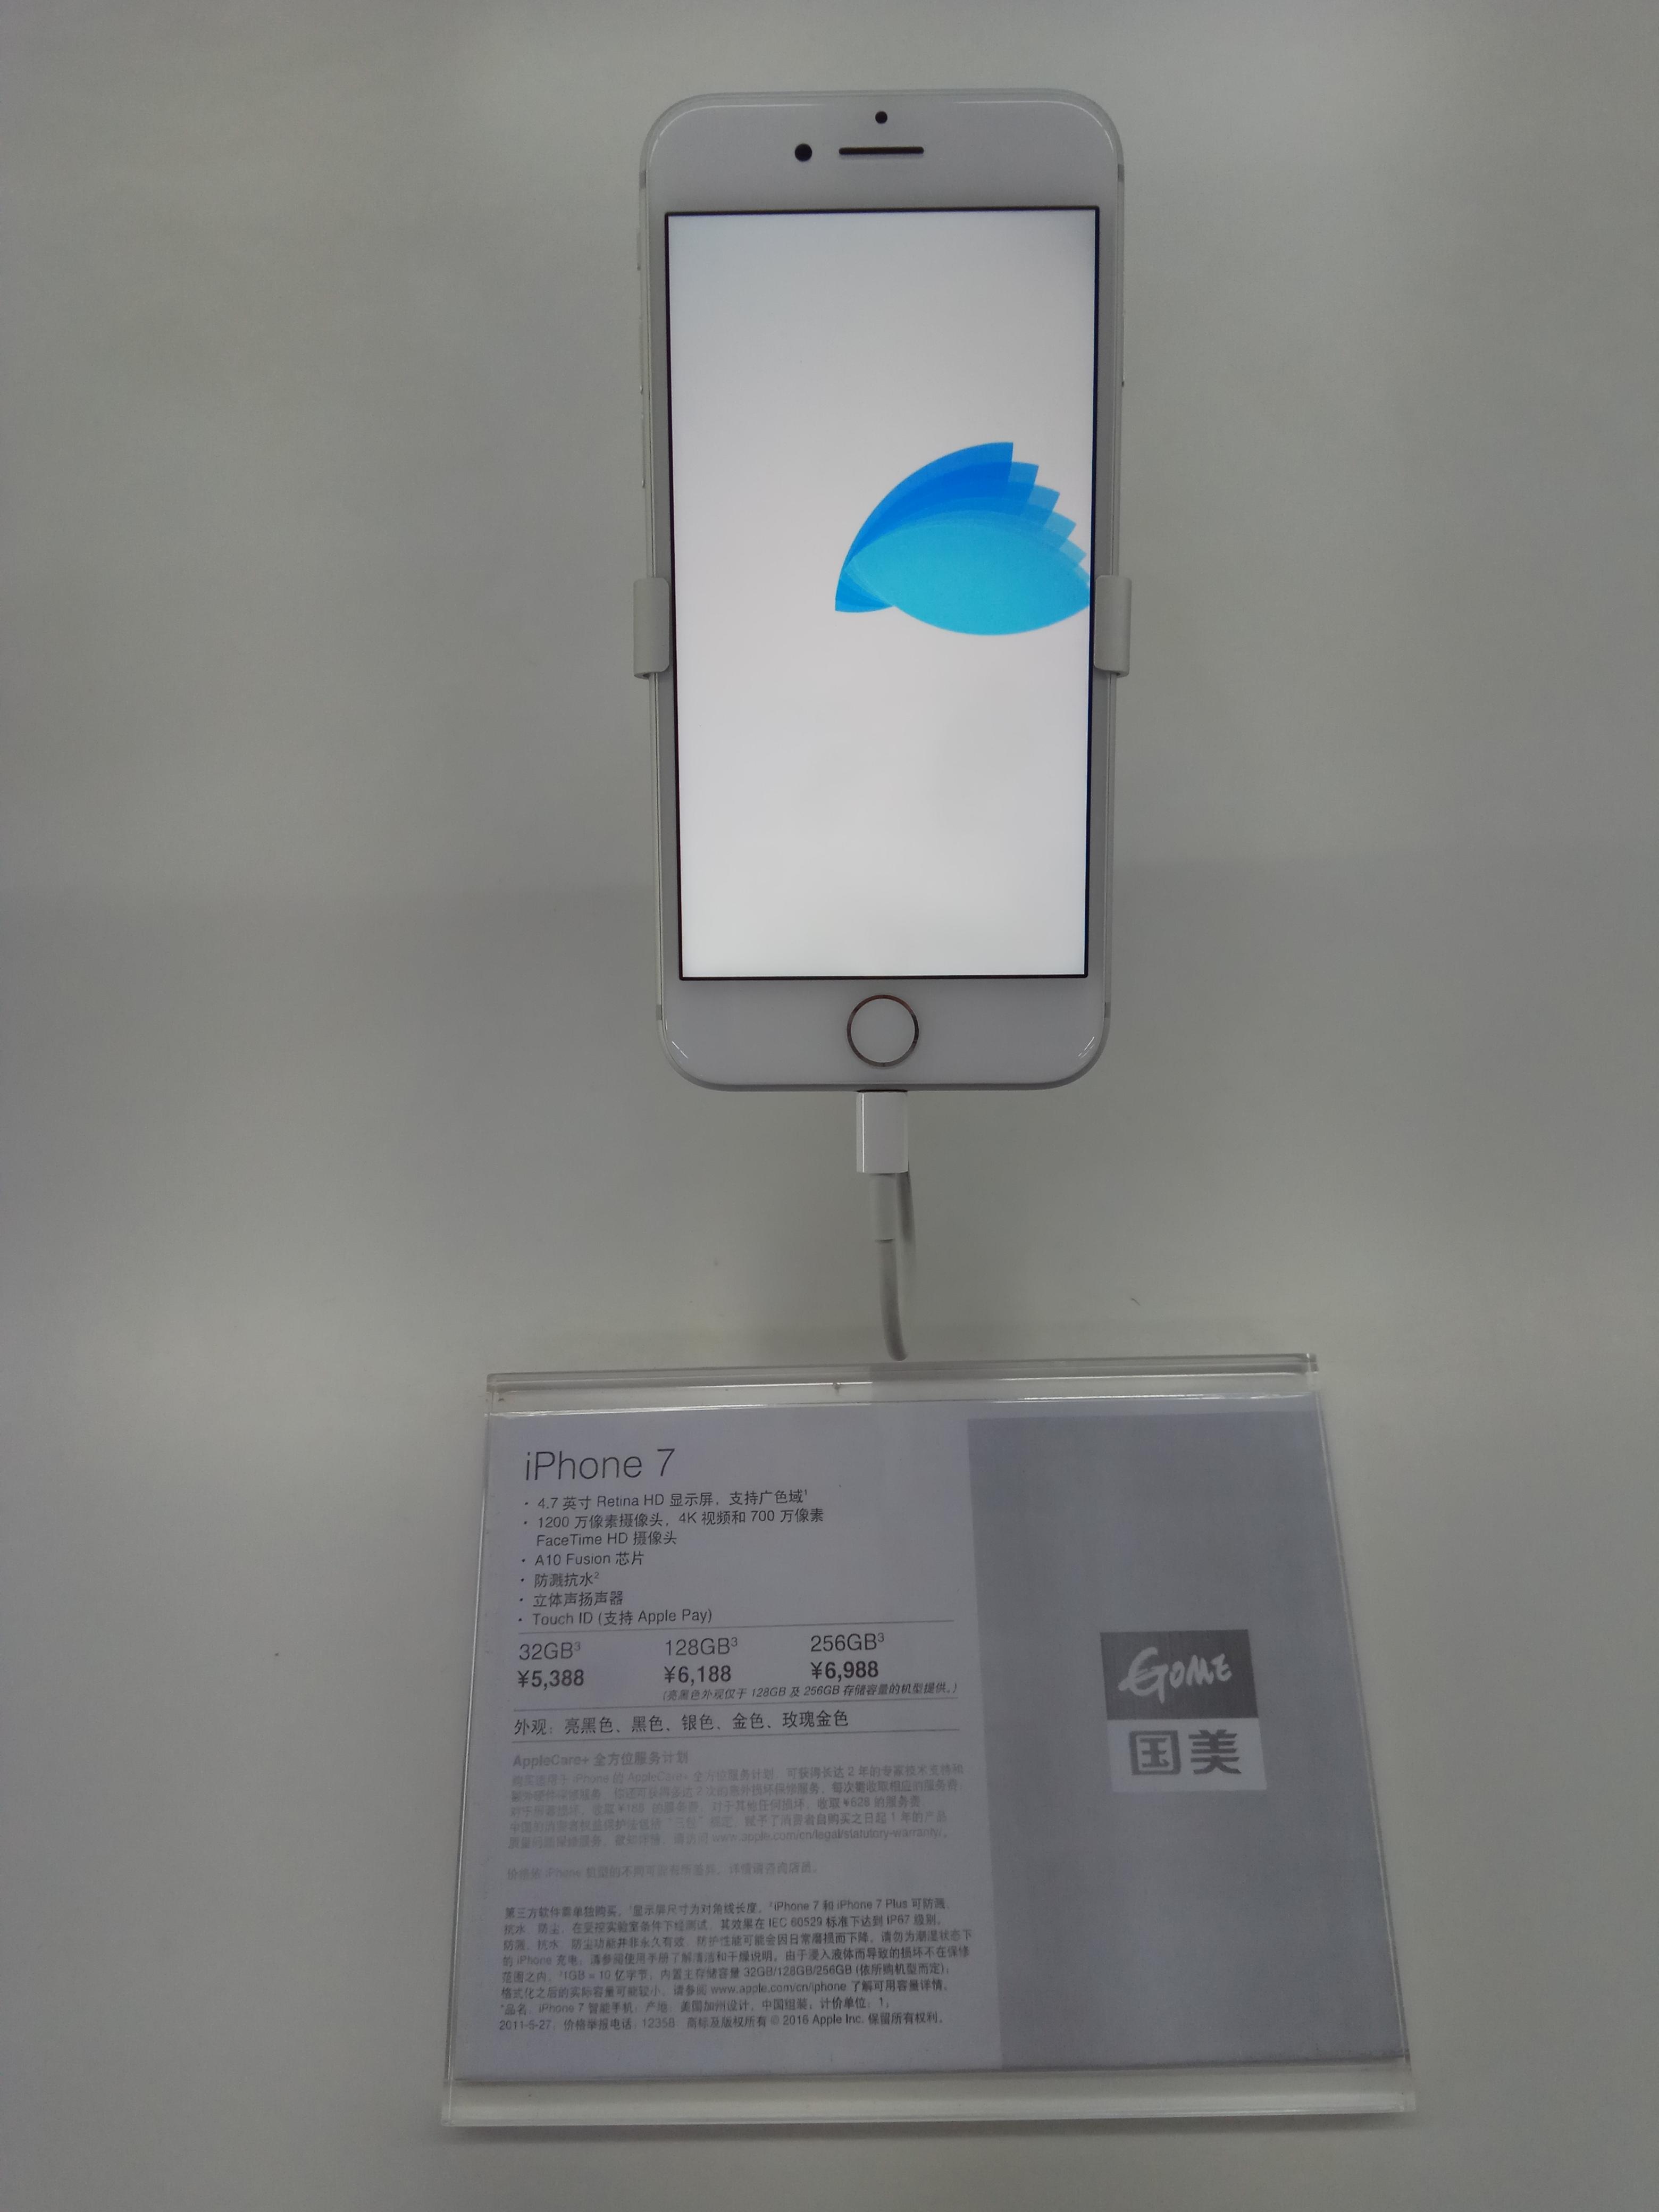 苹果iPhone 7 今日首销,苏宁国美坐地起-搜狐